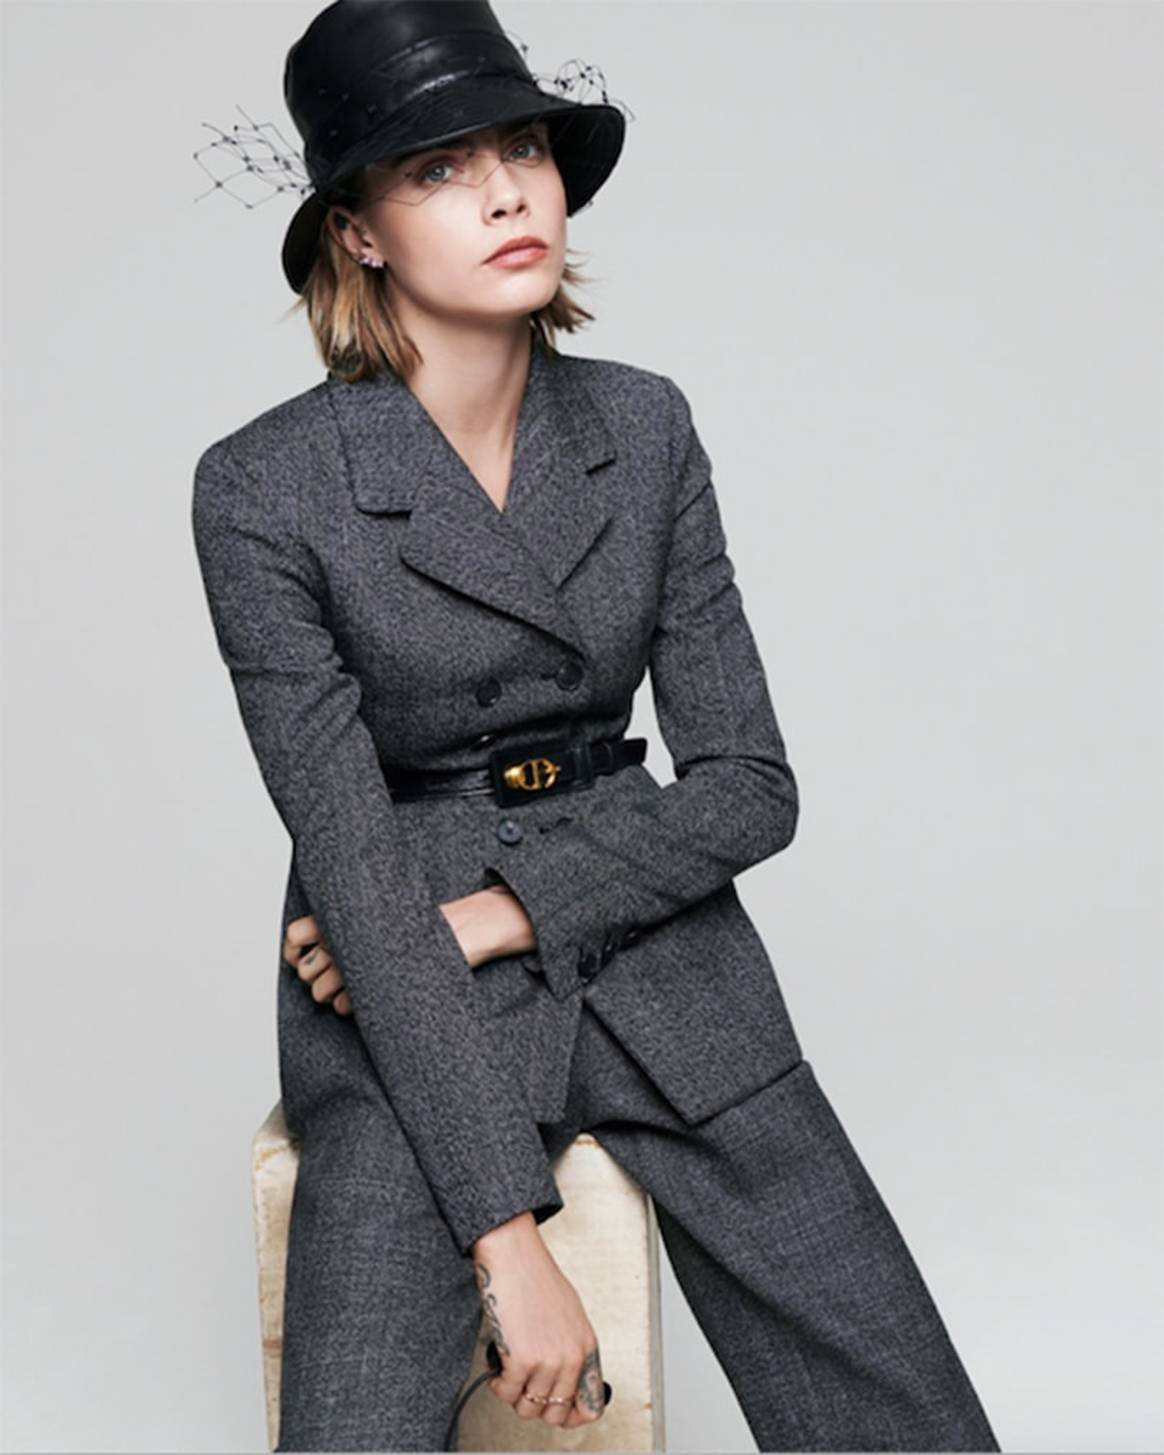 Dior célèbre la mode british avec Cara Delevingne